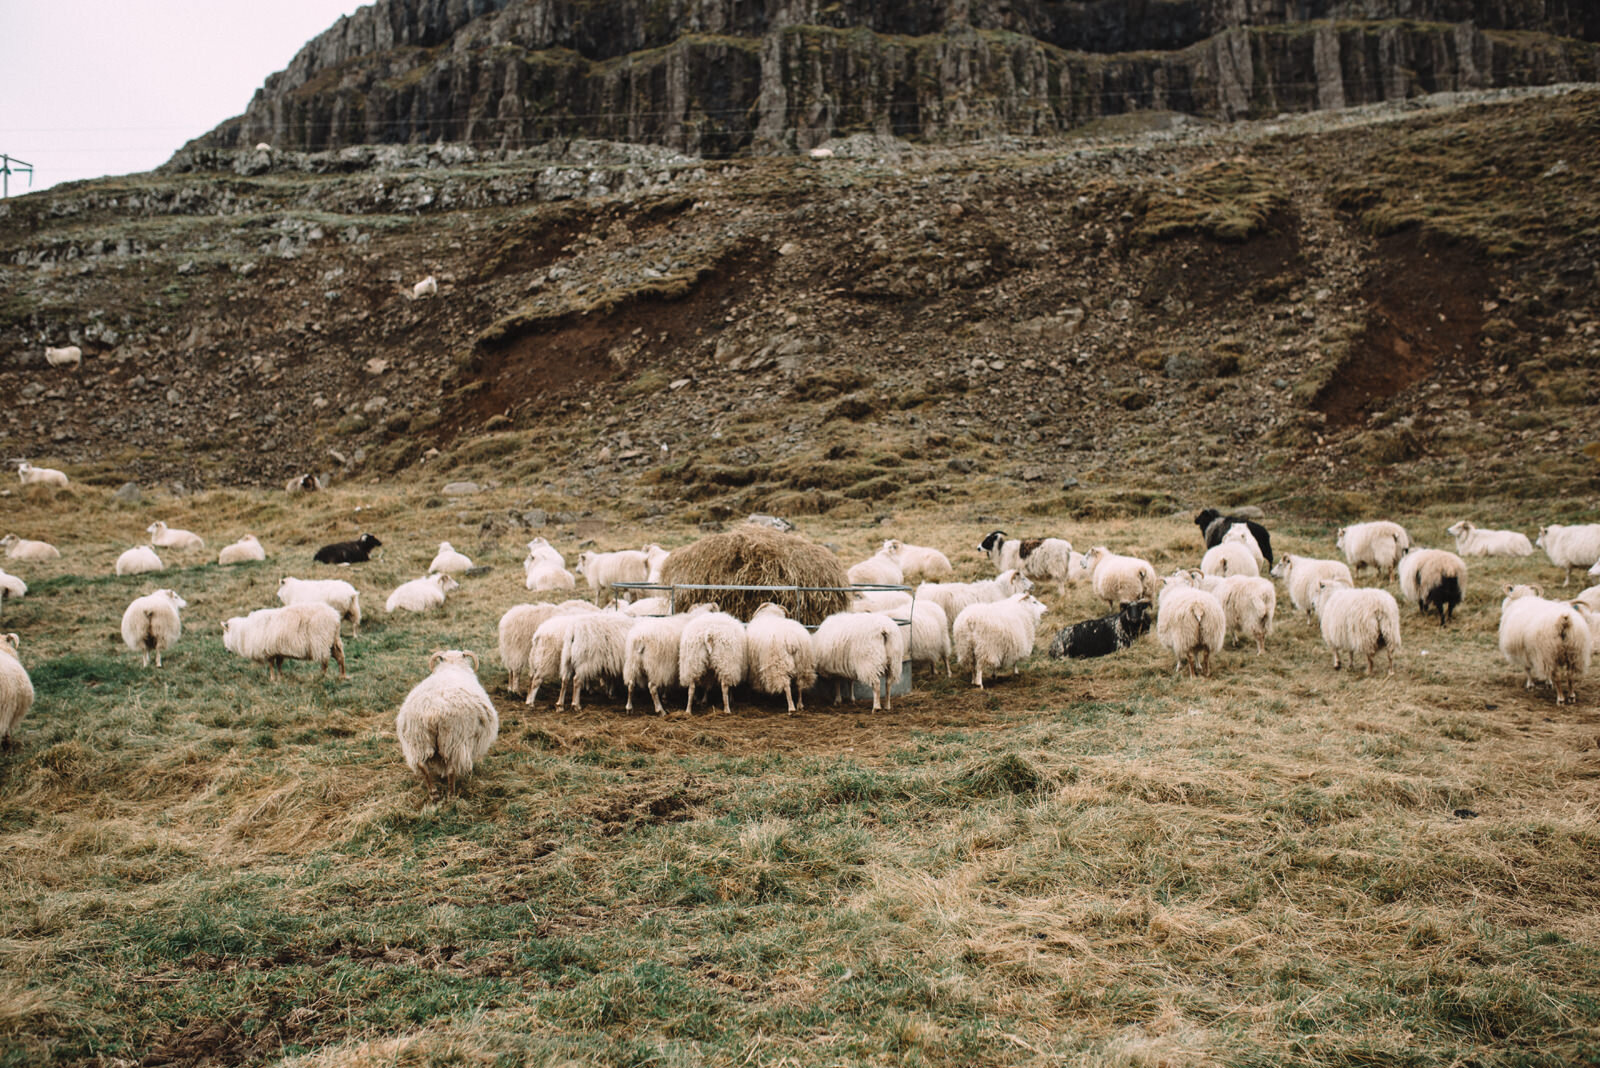  Lũ cừu ở đâu cũng rất nhát người&nbsp;:v 